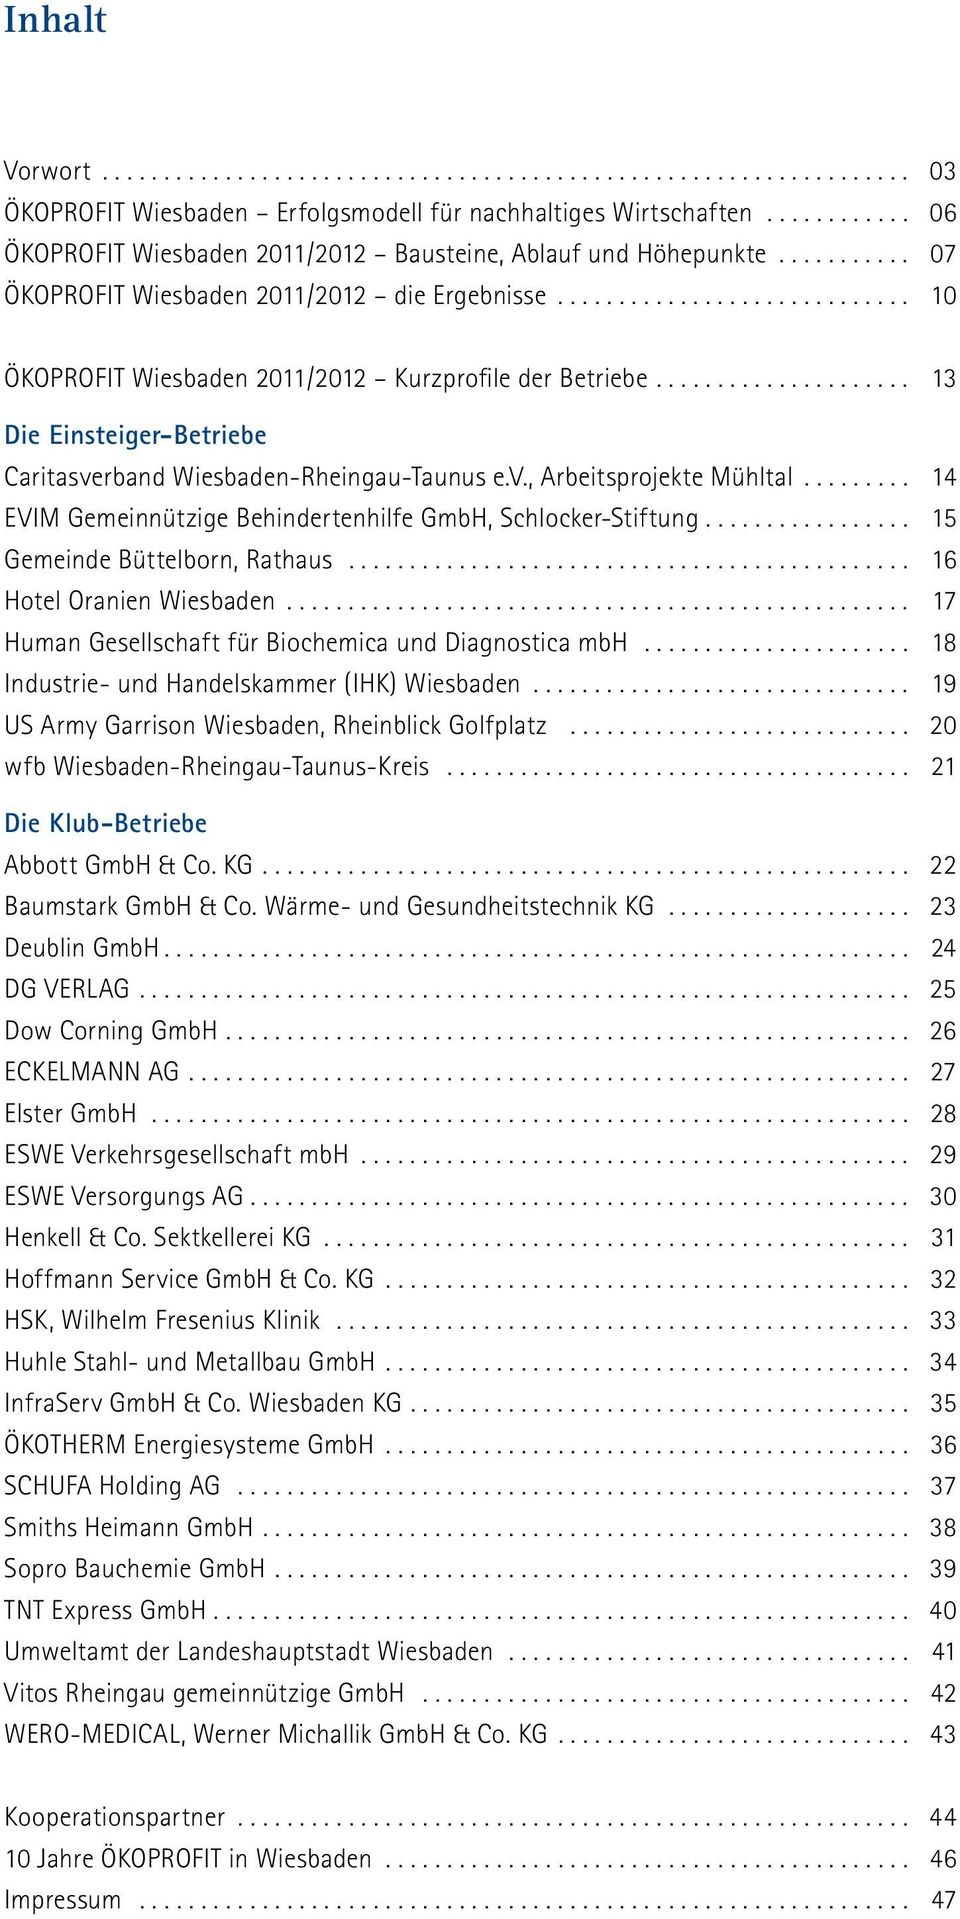 .. 14 EVIM Gemeinnützige Behindertenhilfe GmbH, Schlocker-Stiftung.... 15 Gemeinde Büttelborn, Rathaus... 16 Hotel Oranien Wiesbaden... 17 Human Gesellschaft für Biochemica und Diagnostica mbh.